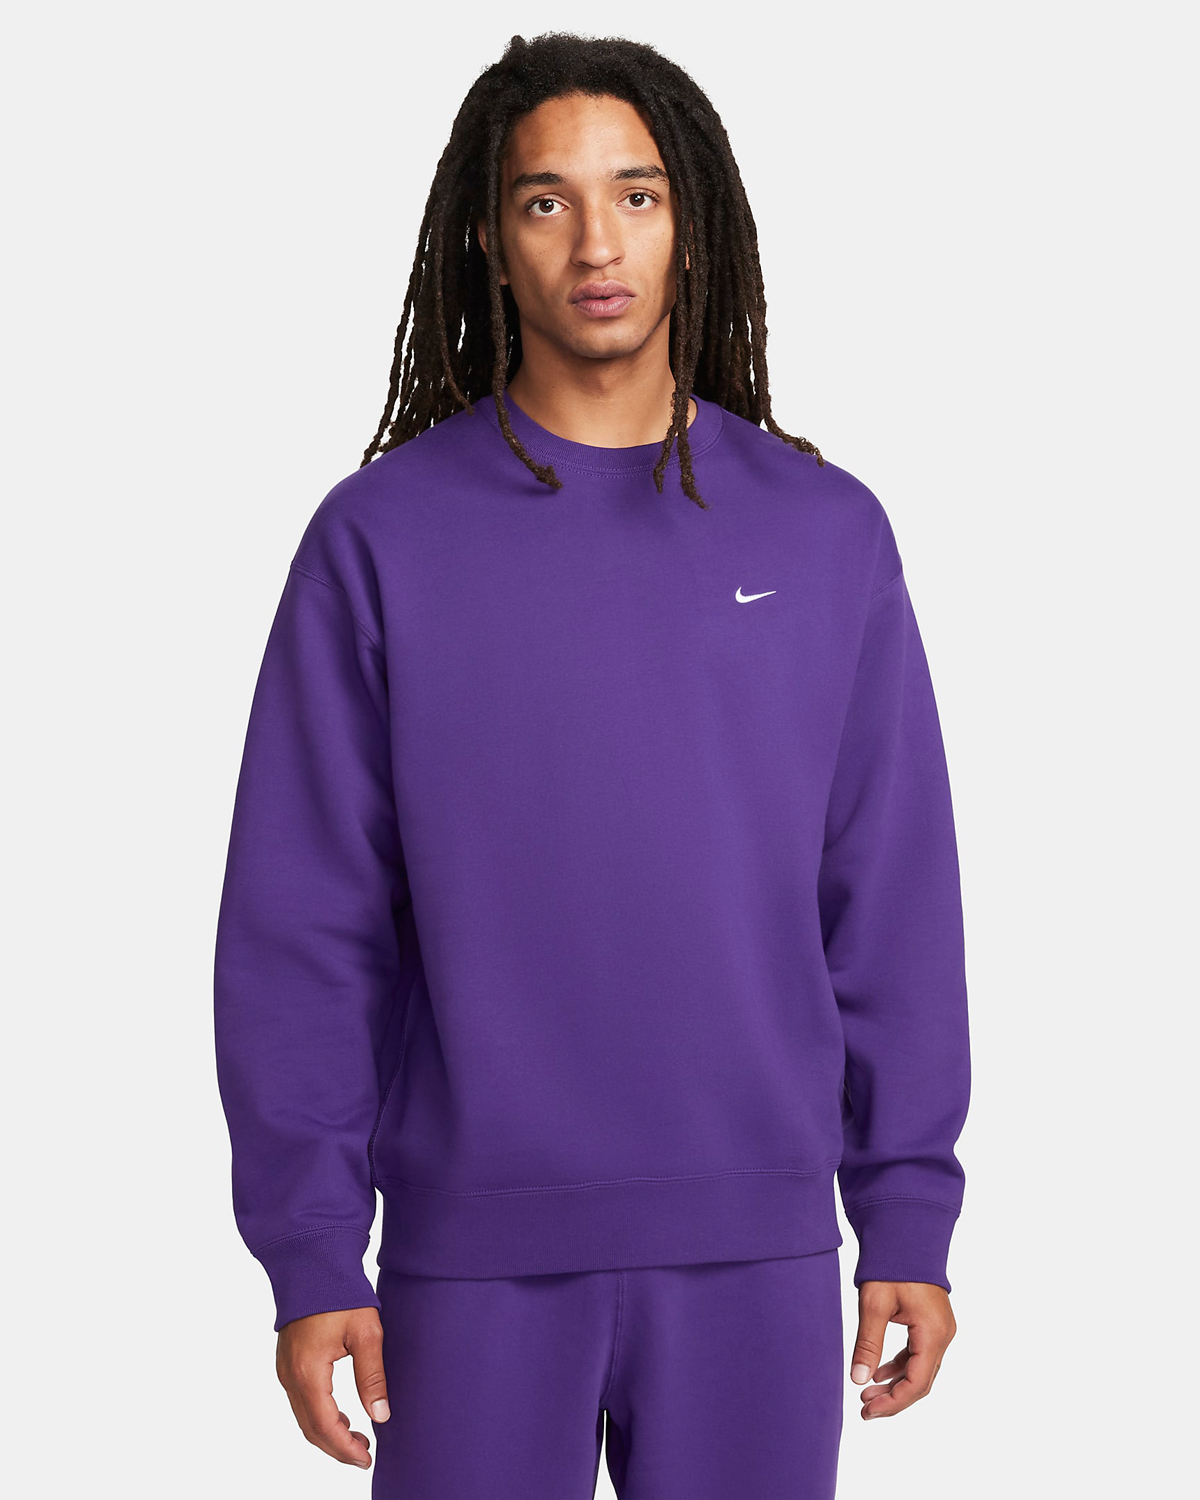 Nike Solo Swoosh Fleece Crew Sweatshirt Field Purple